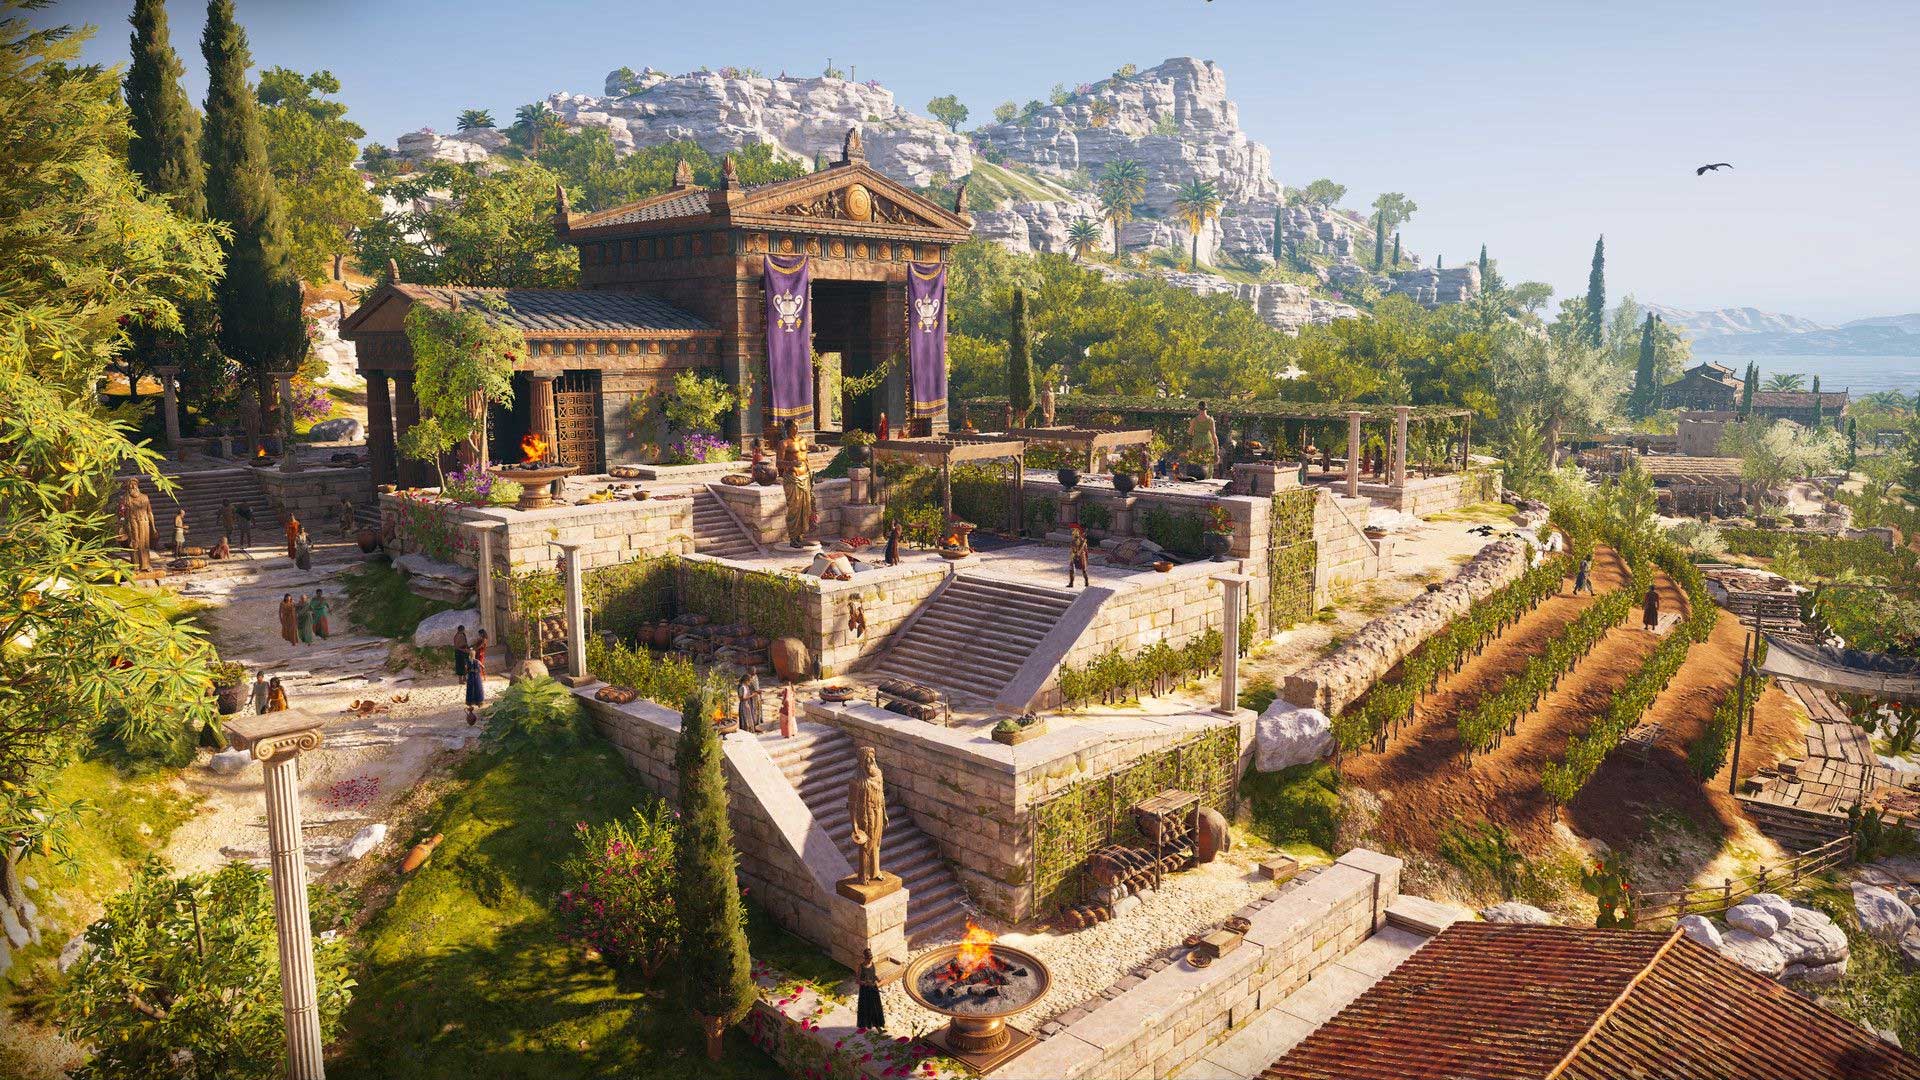 ساخت بازی Assassin’s Creed Infinity توسط یوبی سافت تایید شد